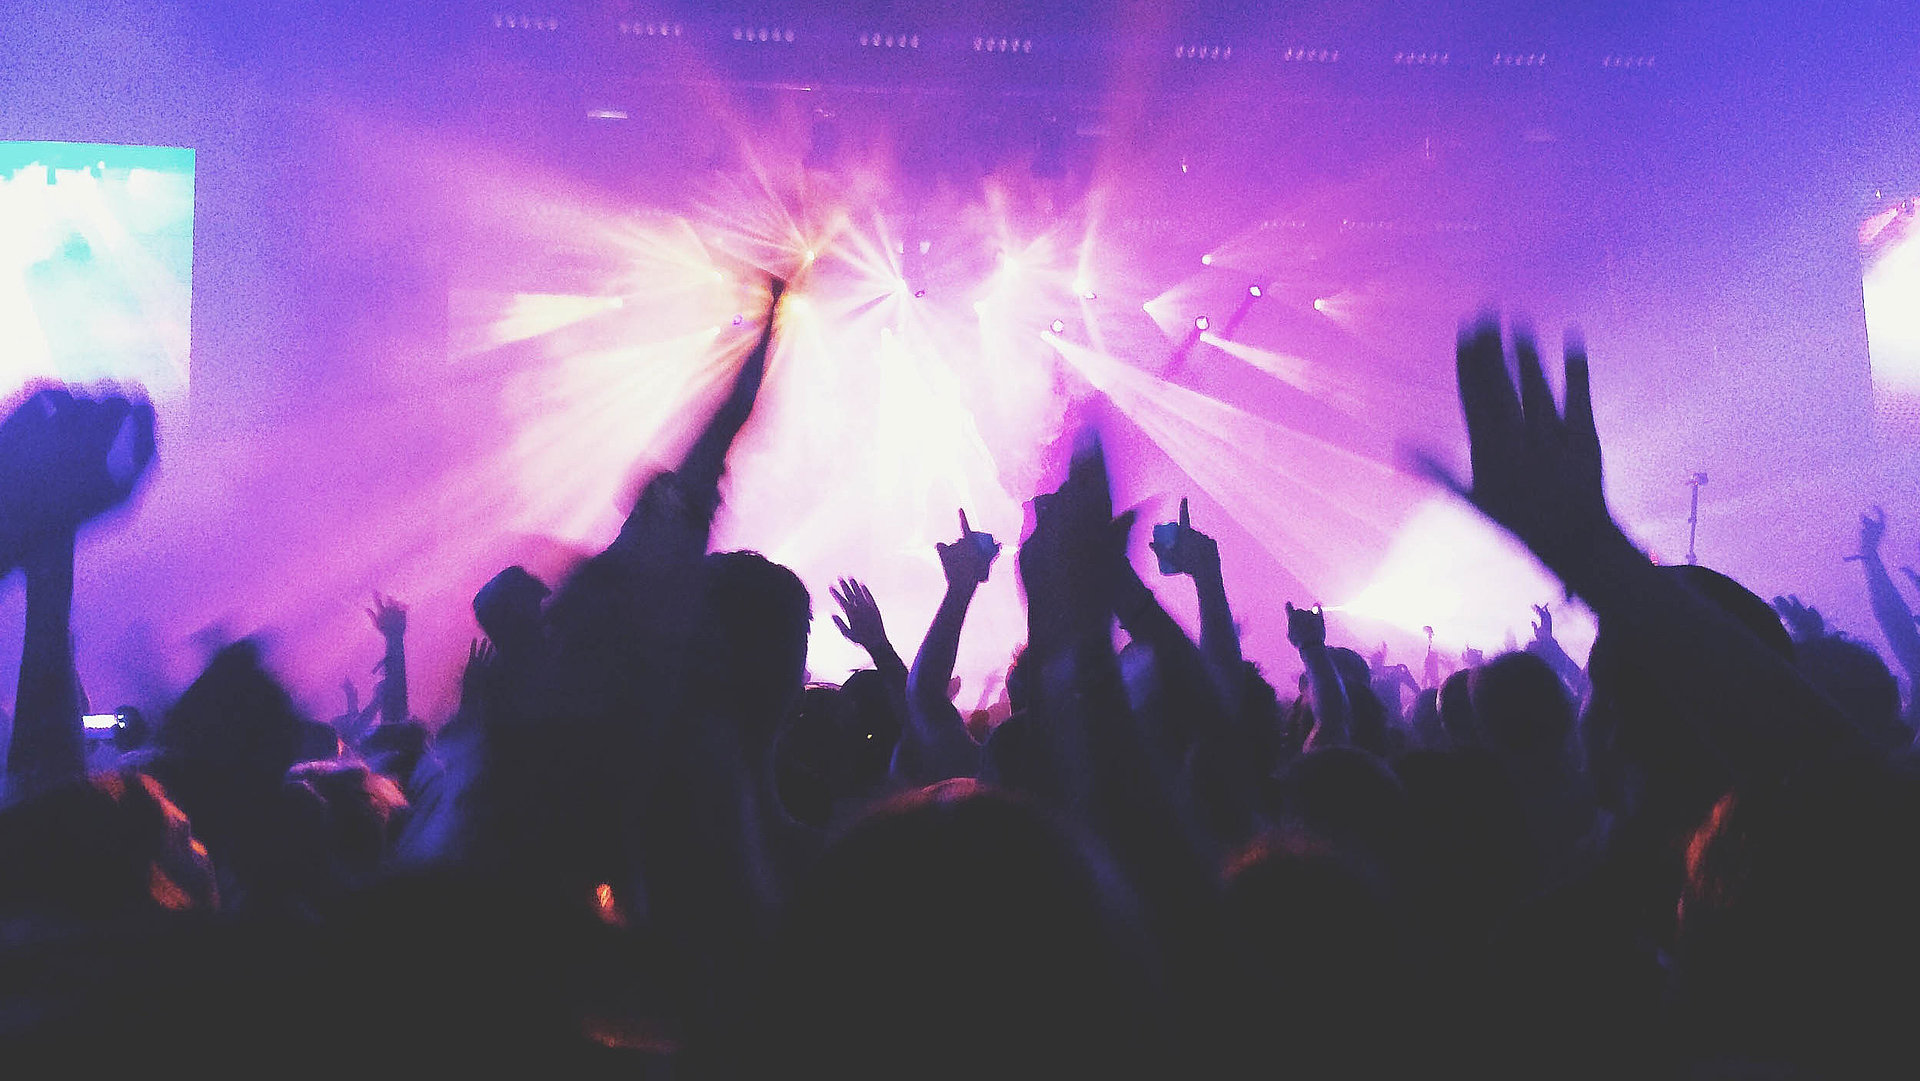 Events und Veranstaltungen in Ostbayern - in einem Club; viele Silhouetten feiern im violetten Scheinwerferlicht